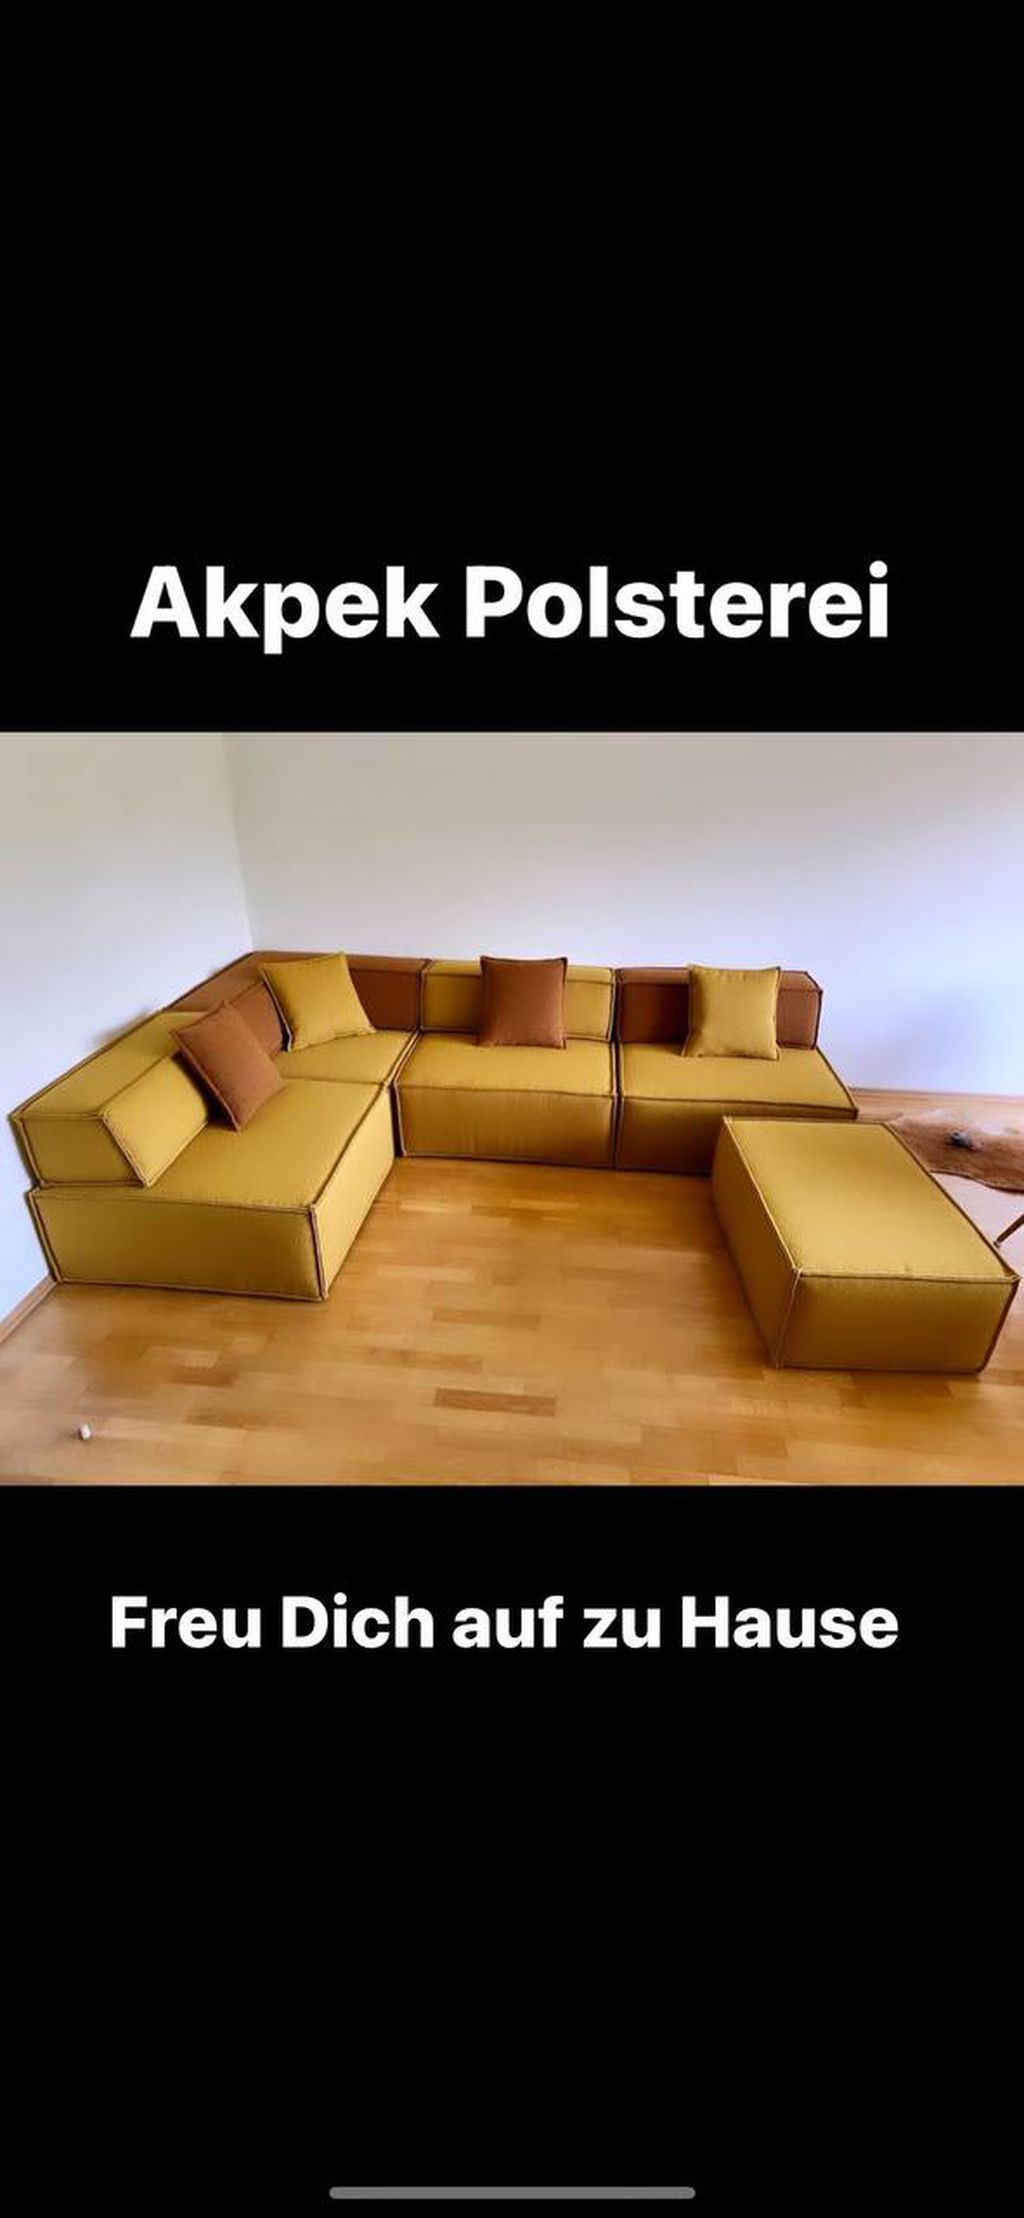 Nutzerfoto 1 Akpek Polsterei GmbH Meisterbetrieb Sattlerei